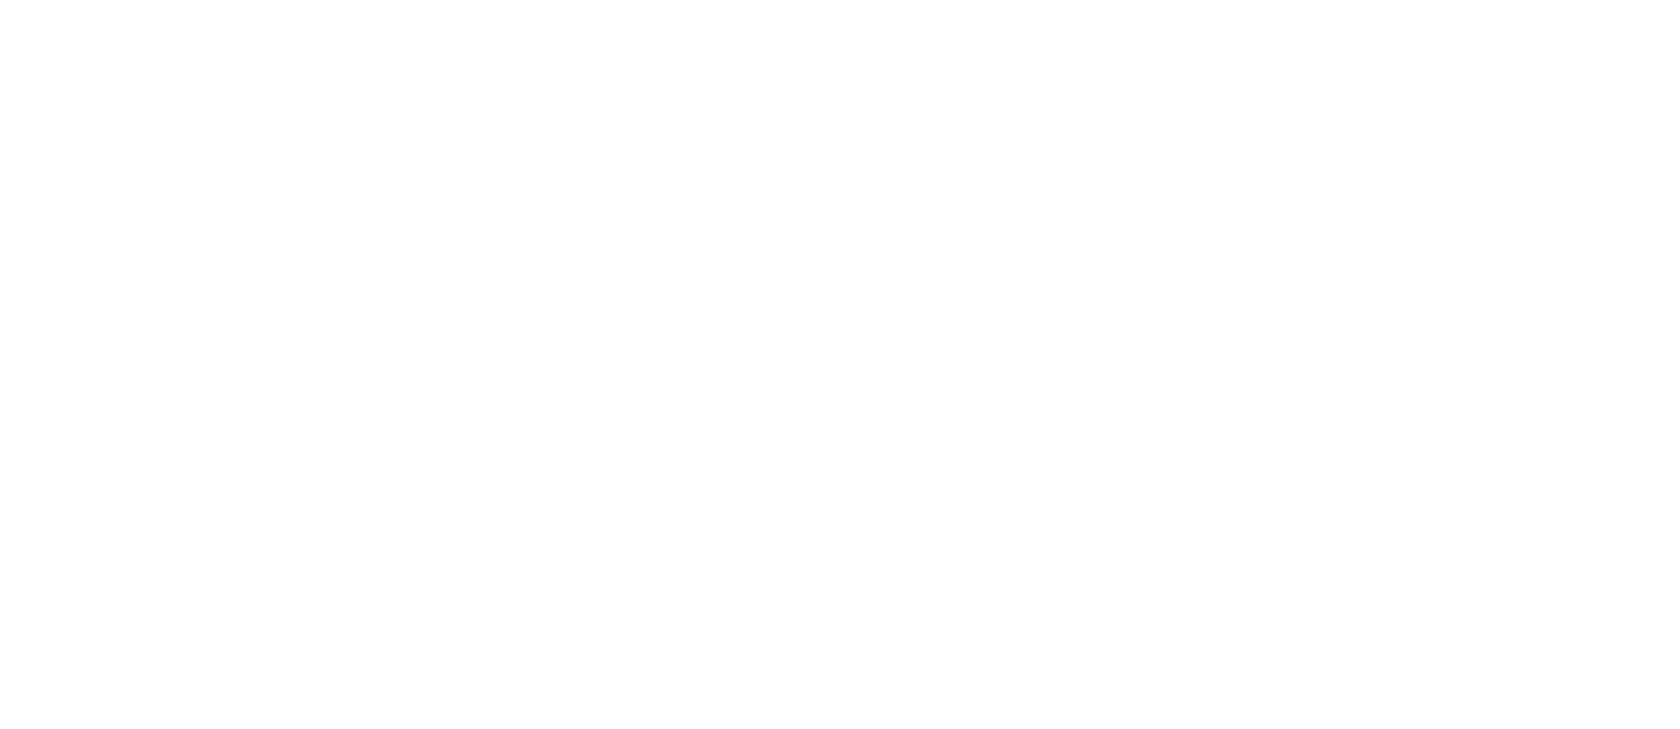 Торцевая заглушка Flexy TOREC IZI TREK 01 для профилей Flexy: размер, вид, применение, способ монтажа в Москве, СПБ и России